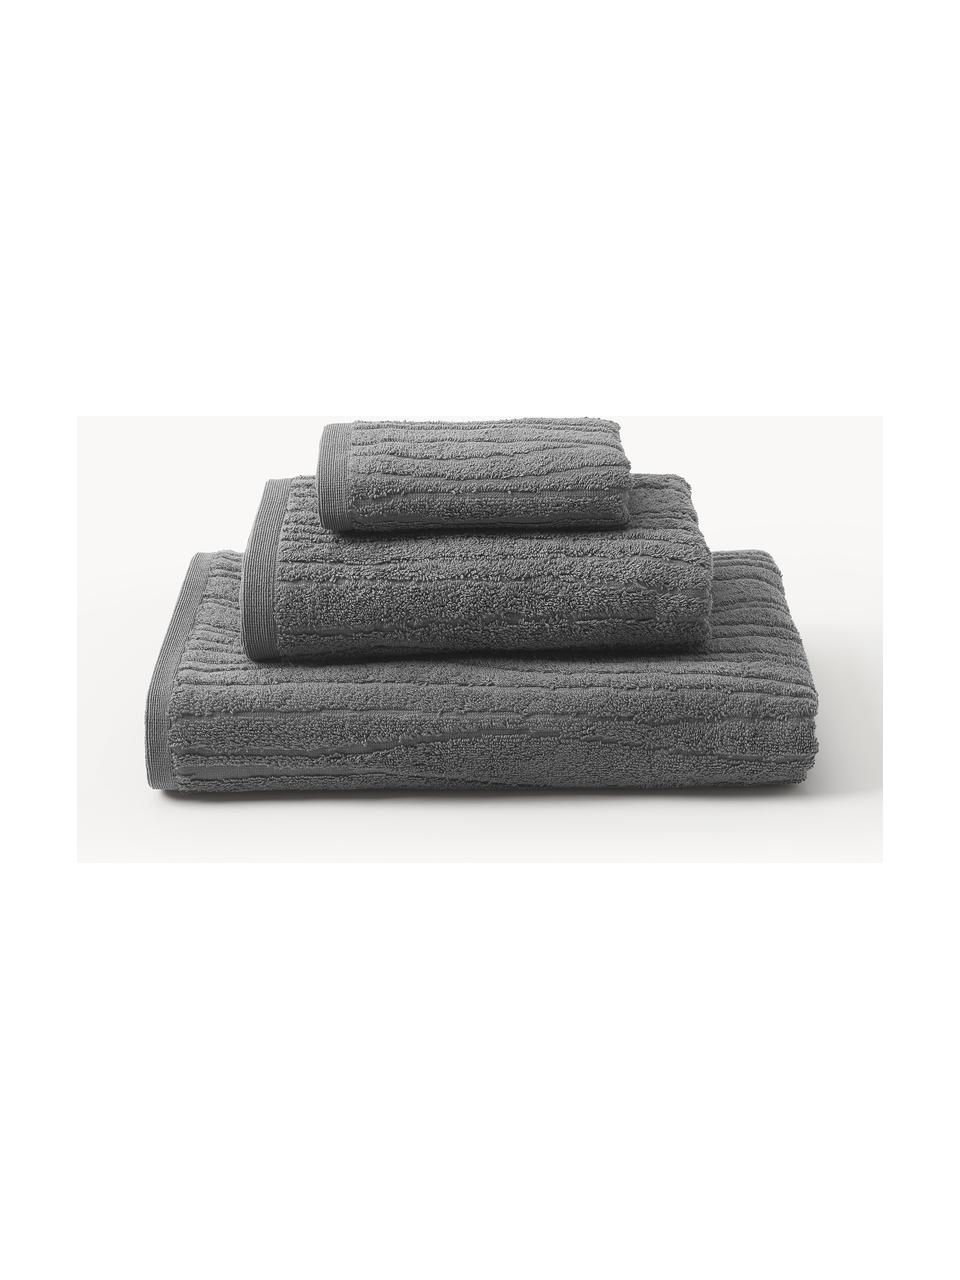 Handtuch-Set Audrina aus Baumwolle, in verschiedenen Setgrössen, Dunkelgrau, 3er-Set (Gästehandtuch, Handtuch & Duschtuch)